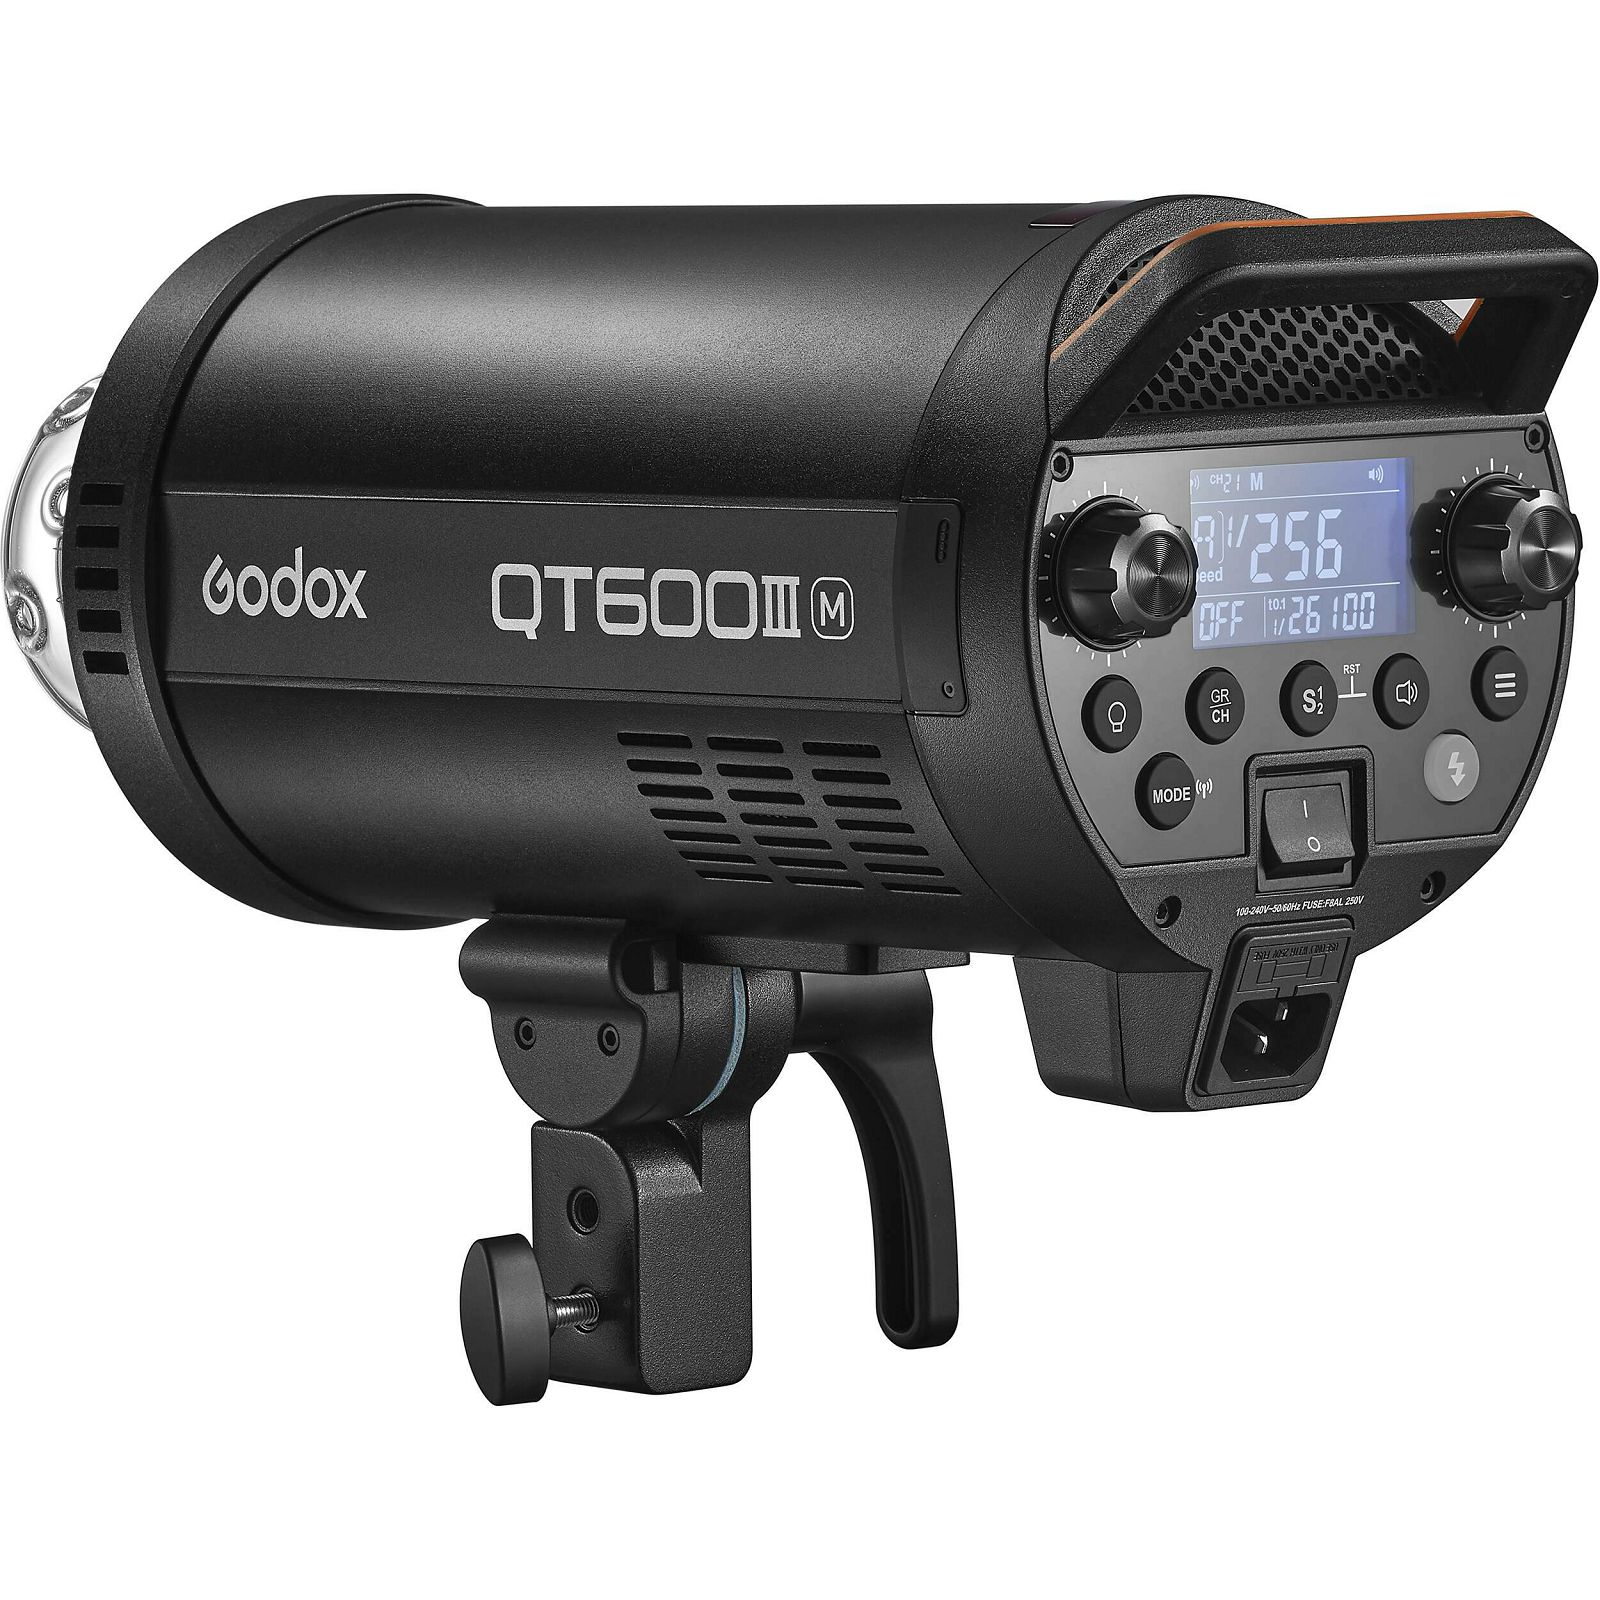 Godox QT600IIIM (S-type Bowens mount) Studio Flash studijska bljeskalica QT600 III M